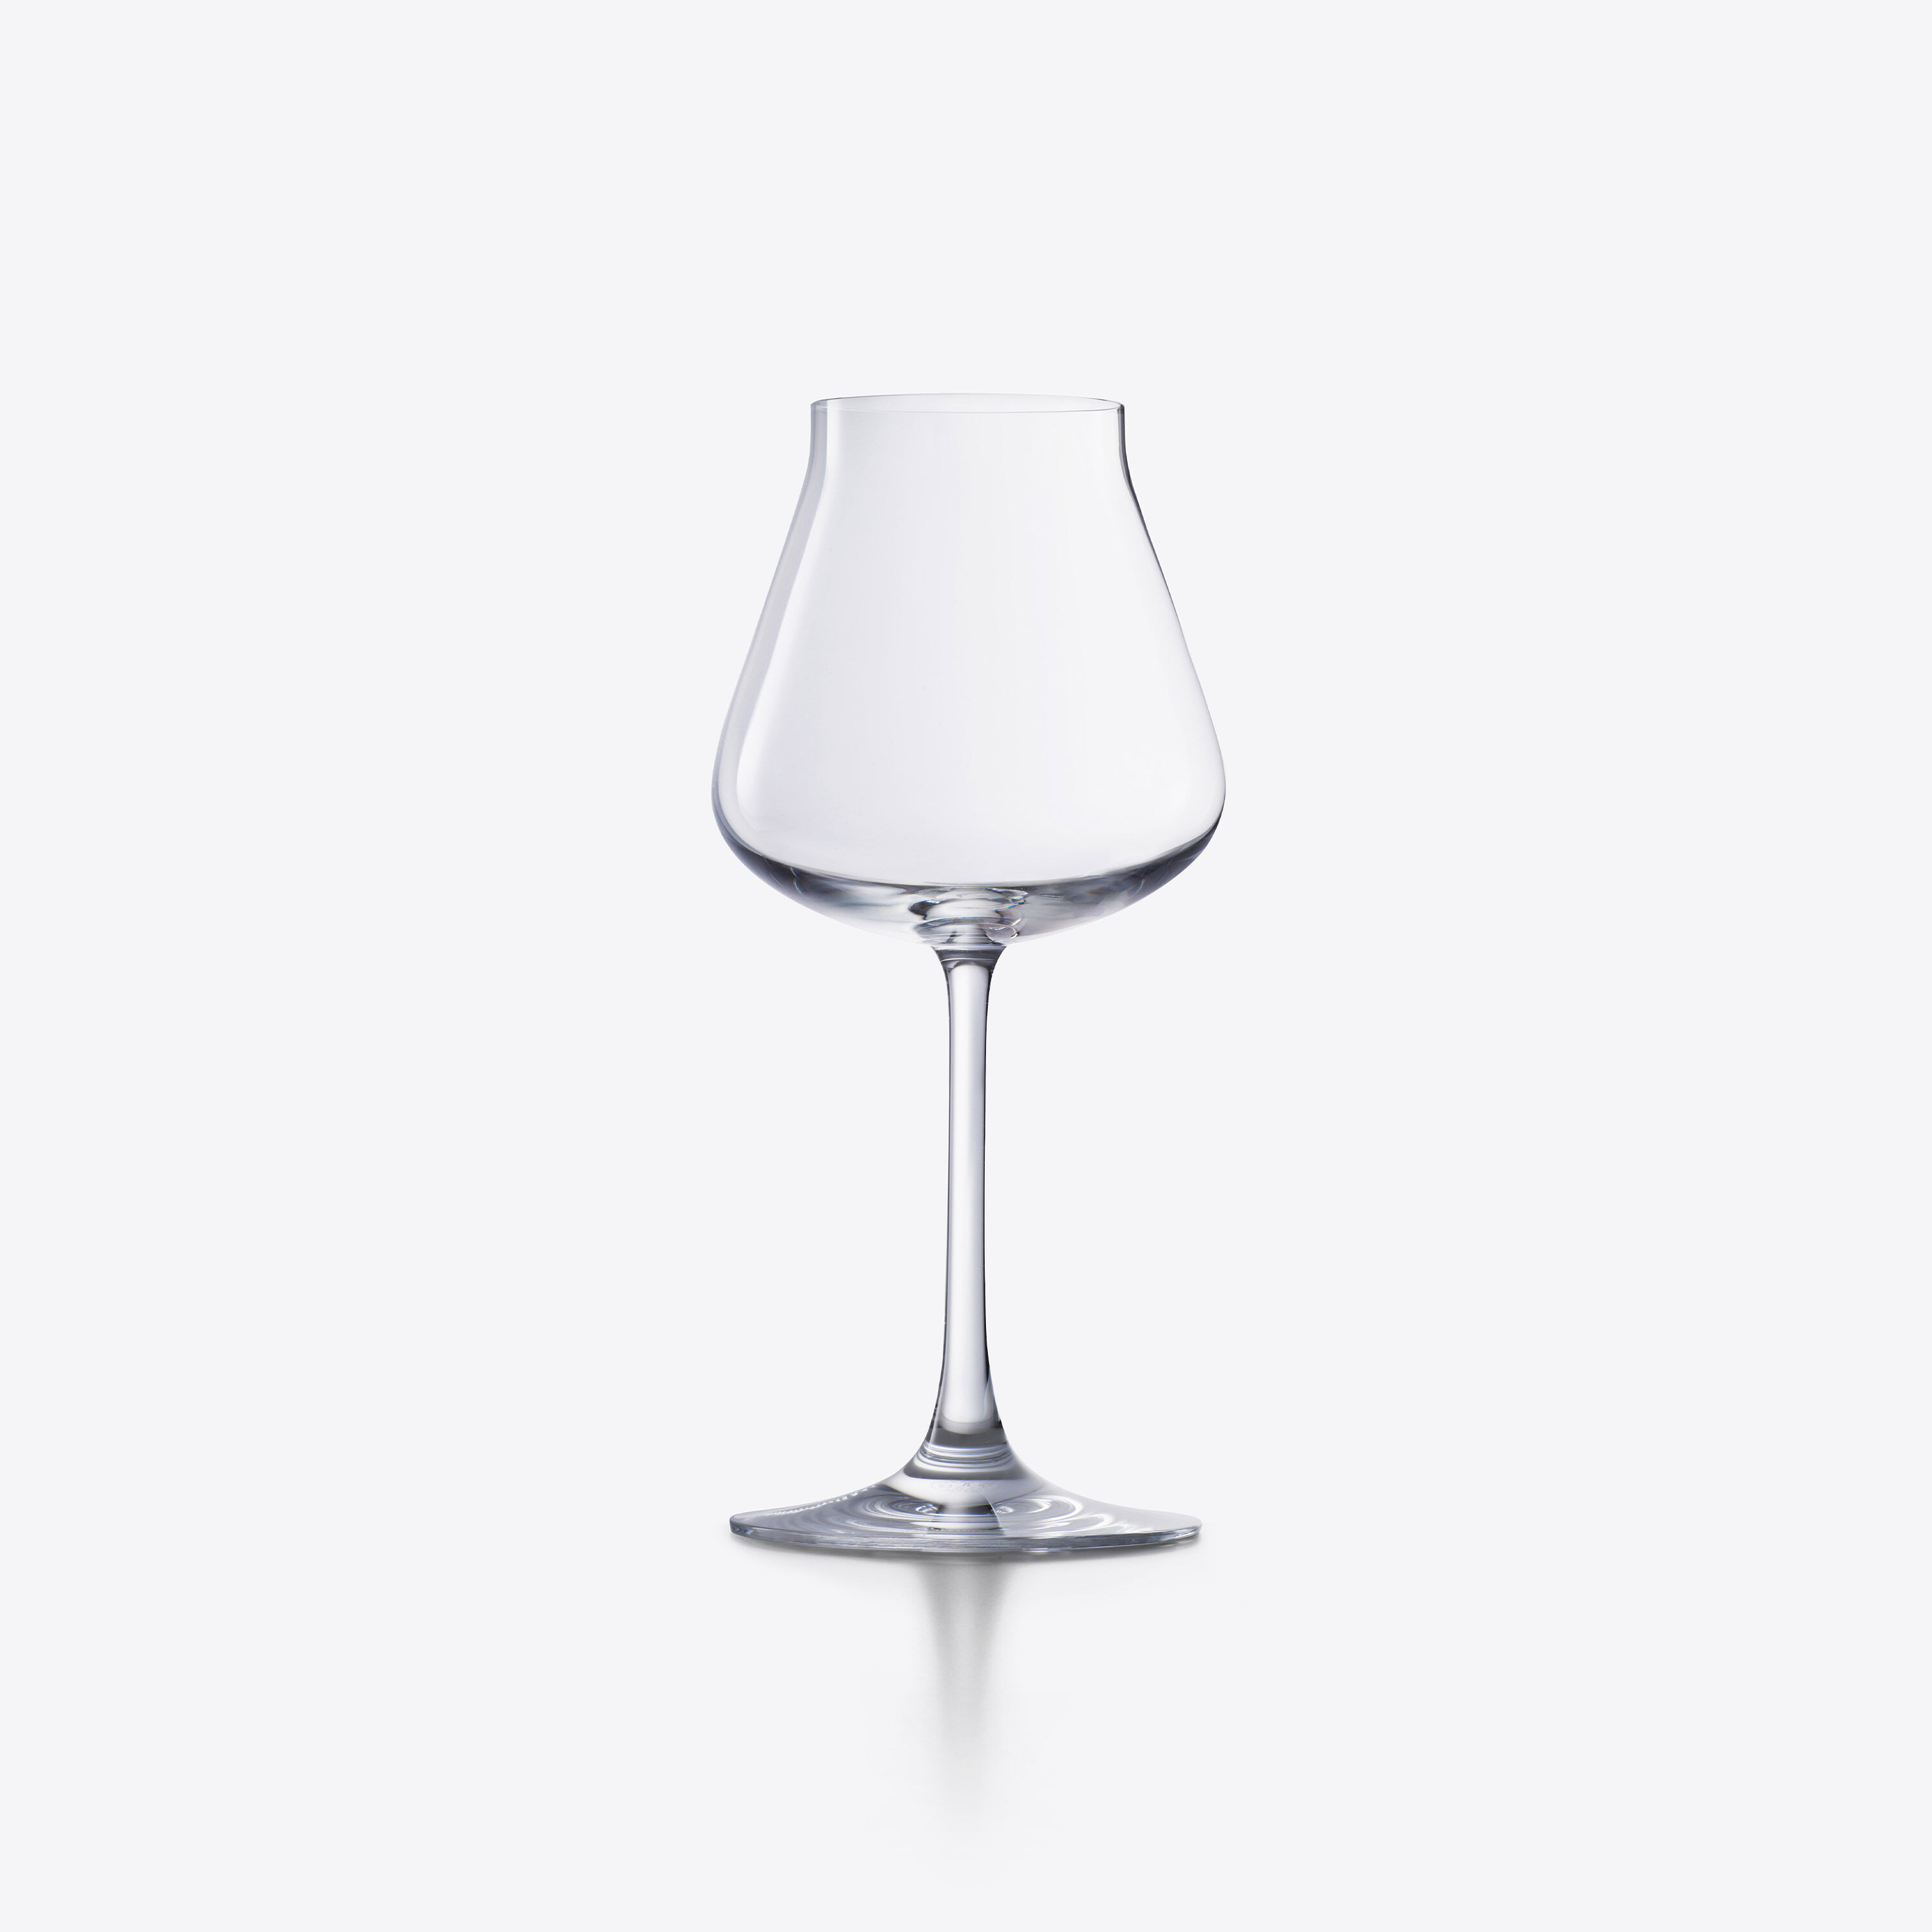 新作即納N310 Baccarat バカラ クリスタル シャトーバカラ ペア ワイングラス 2客 クリスタルガラス